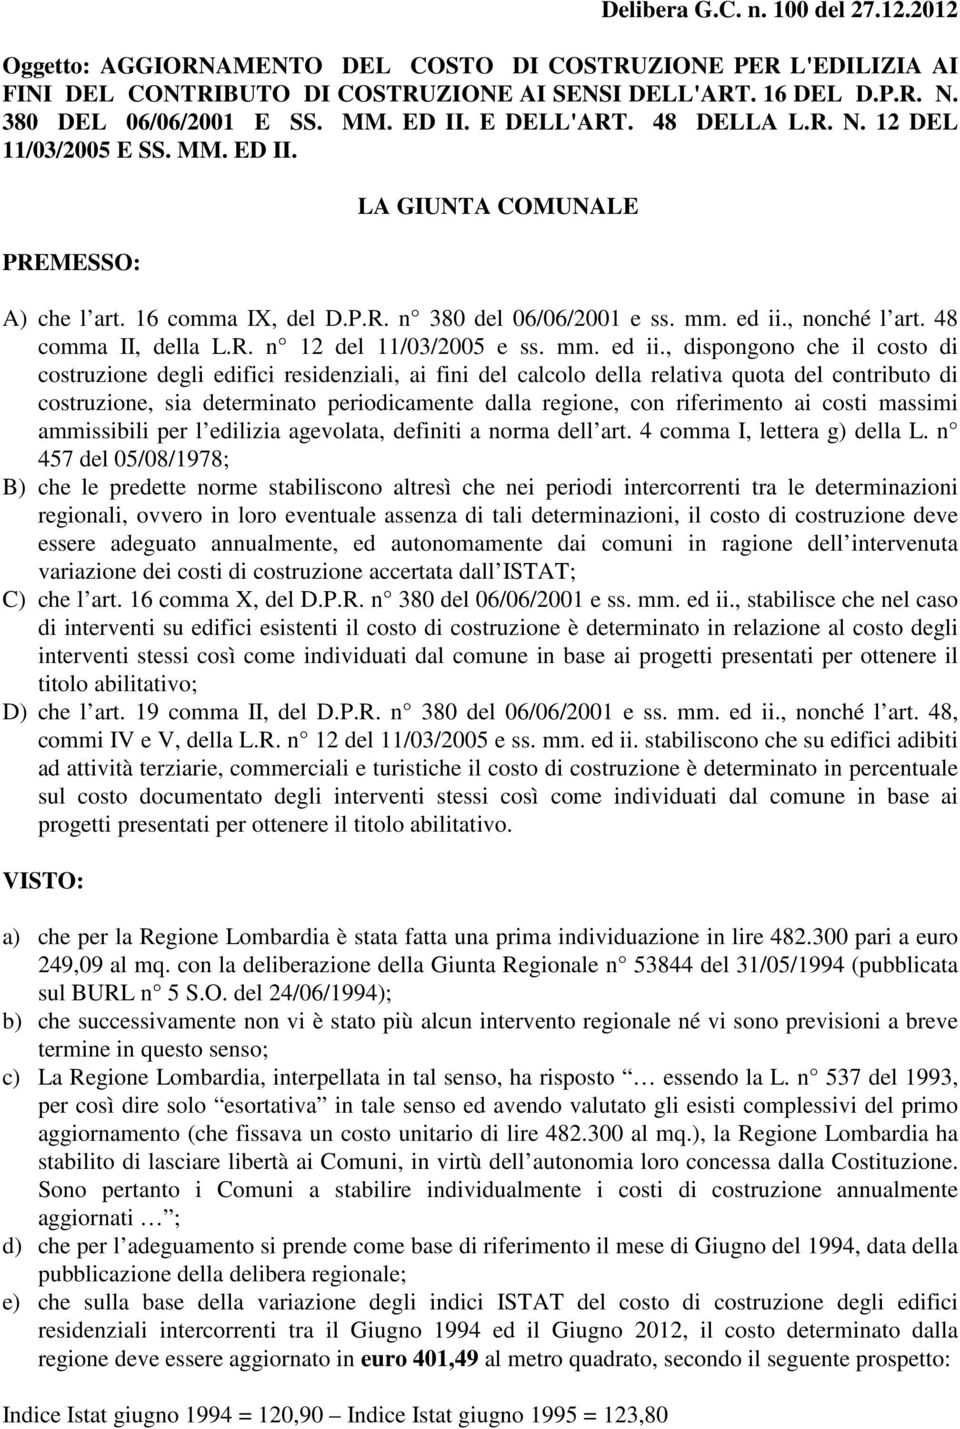 48 comma II, della L.R. n 12 del 11/03/2005 e ss. mm. ed ii.